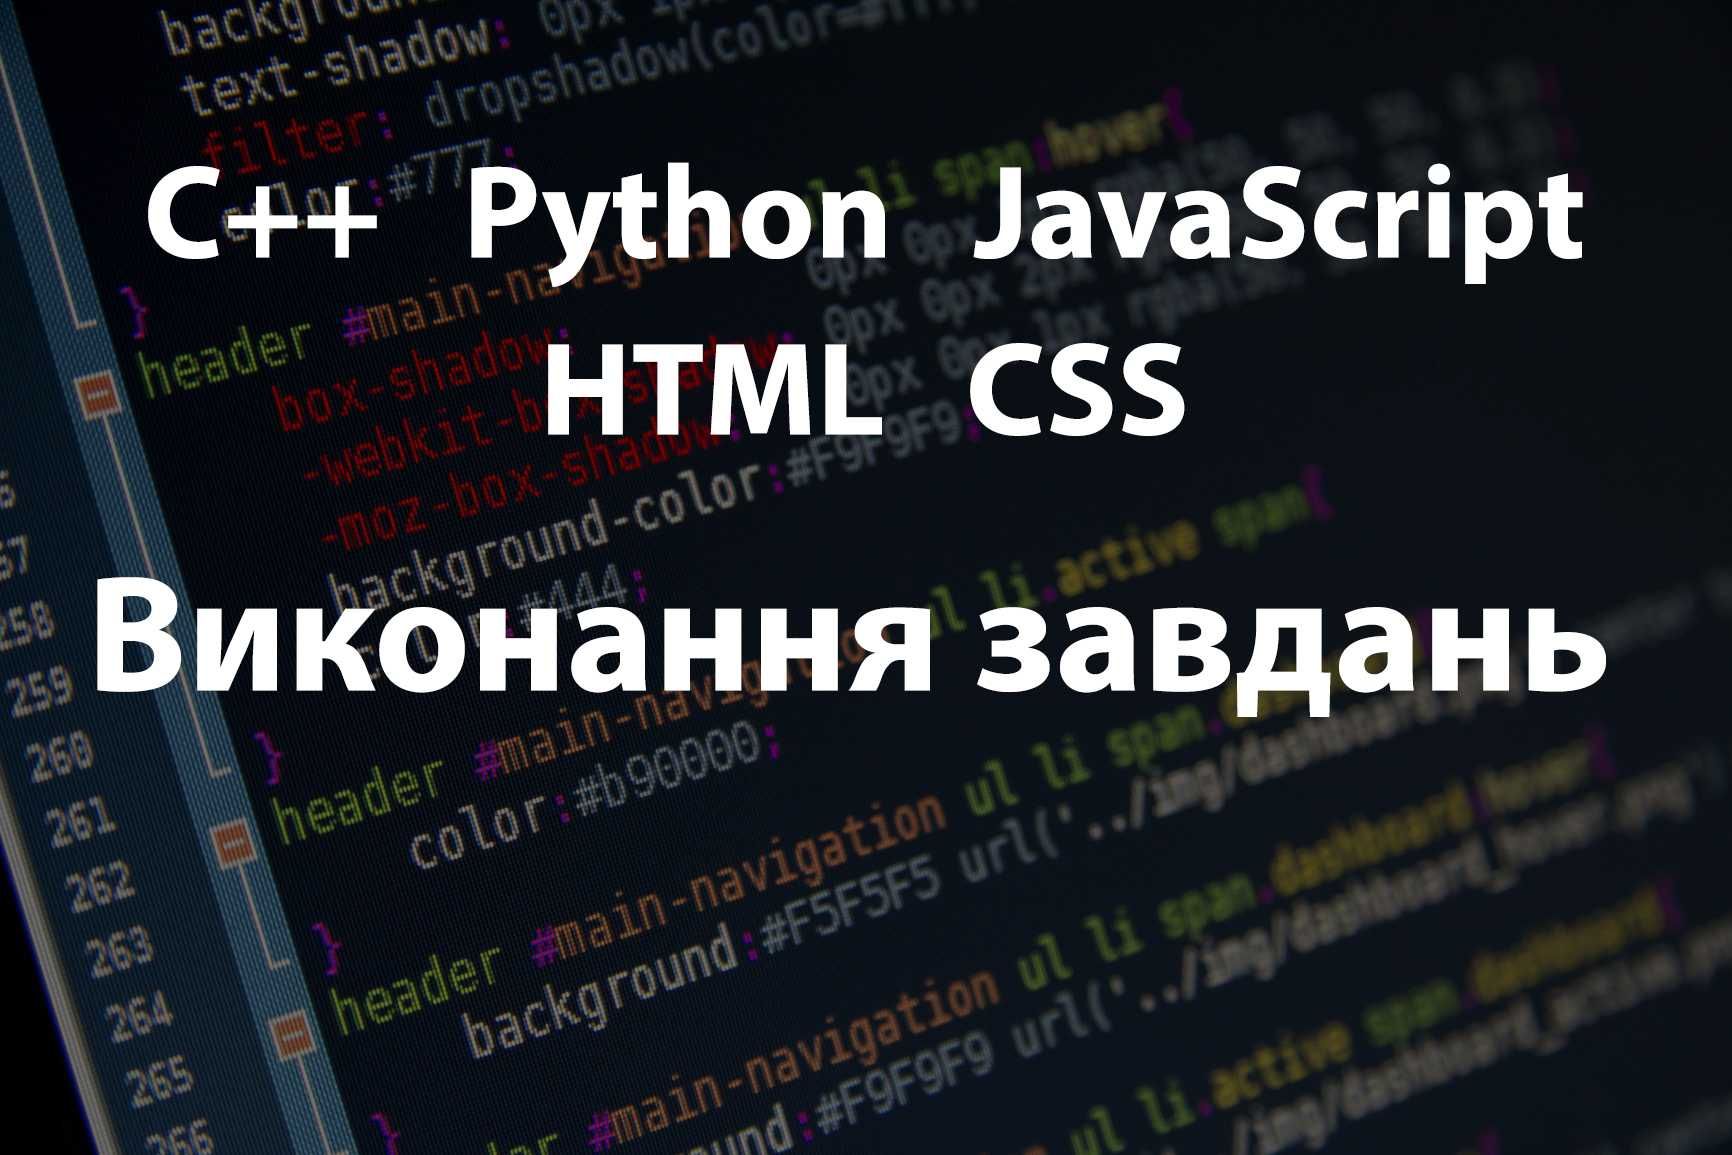 Програмування: Виконання завдань з JavaScript, C++, Python, HTML, CSS